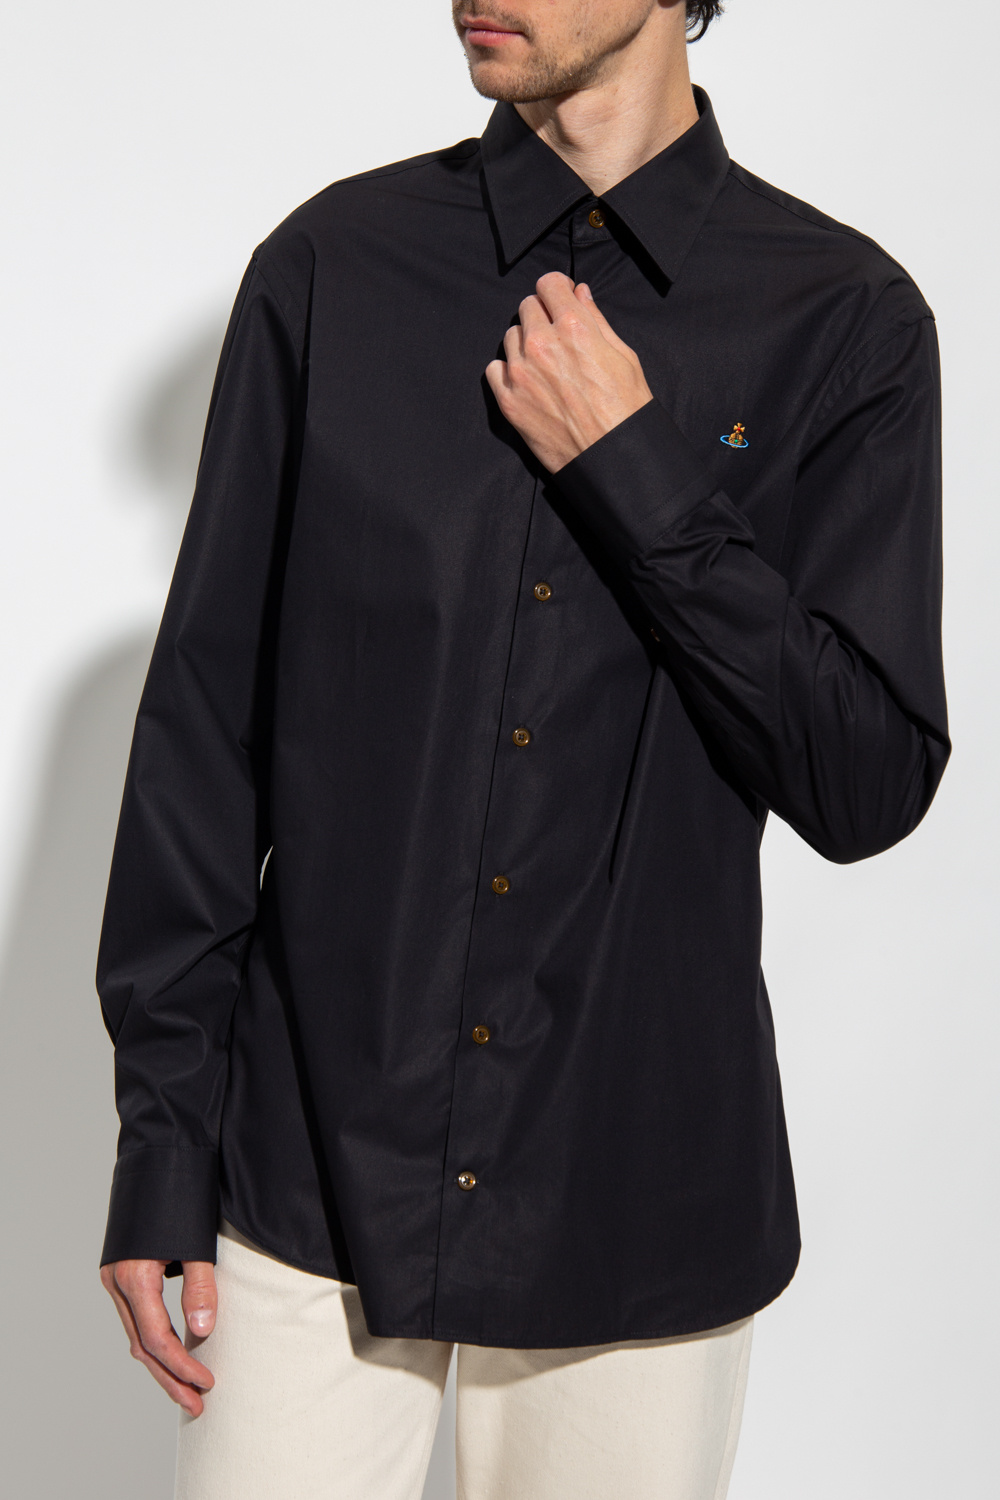 Vivienne Westwood buy polo ralph lauren button down slim fit shirt